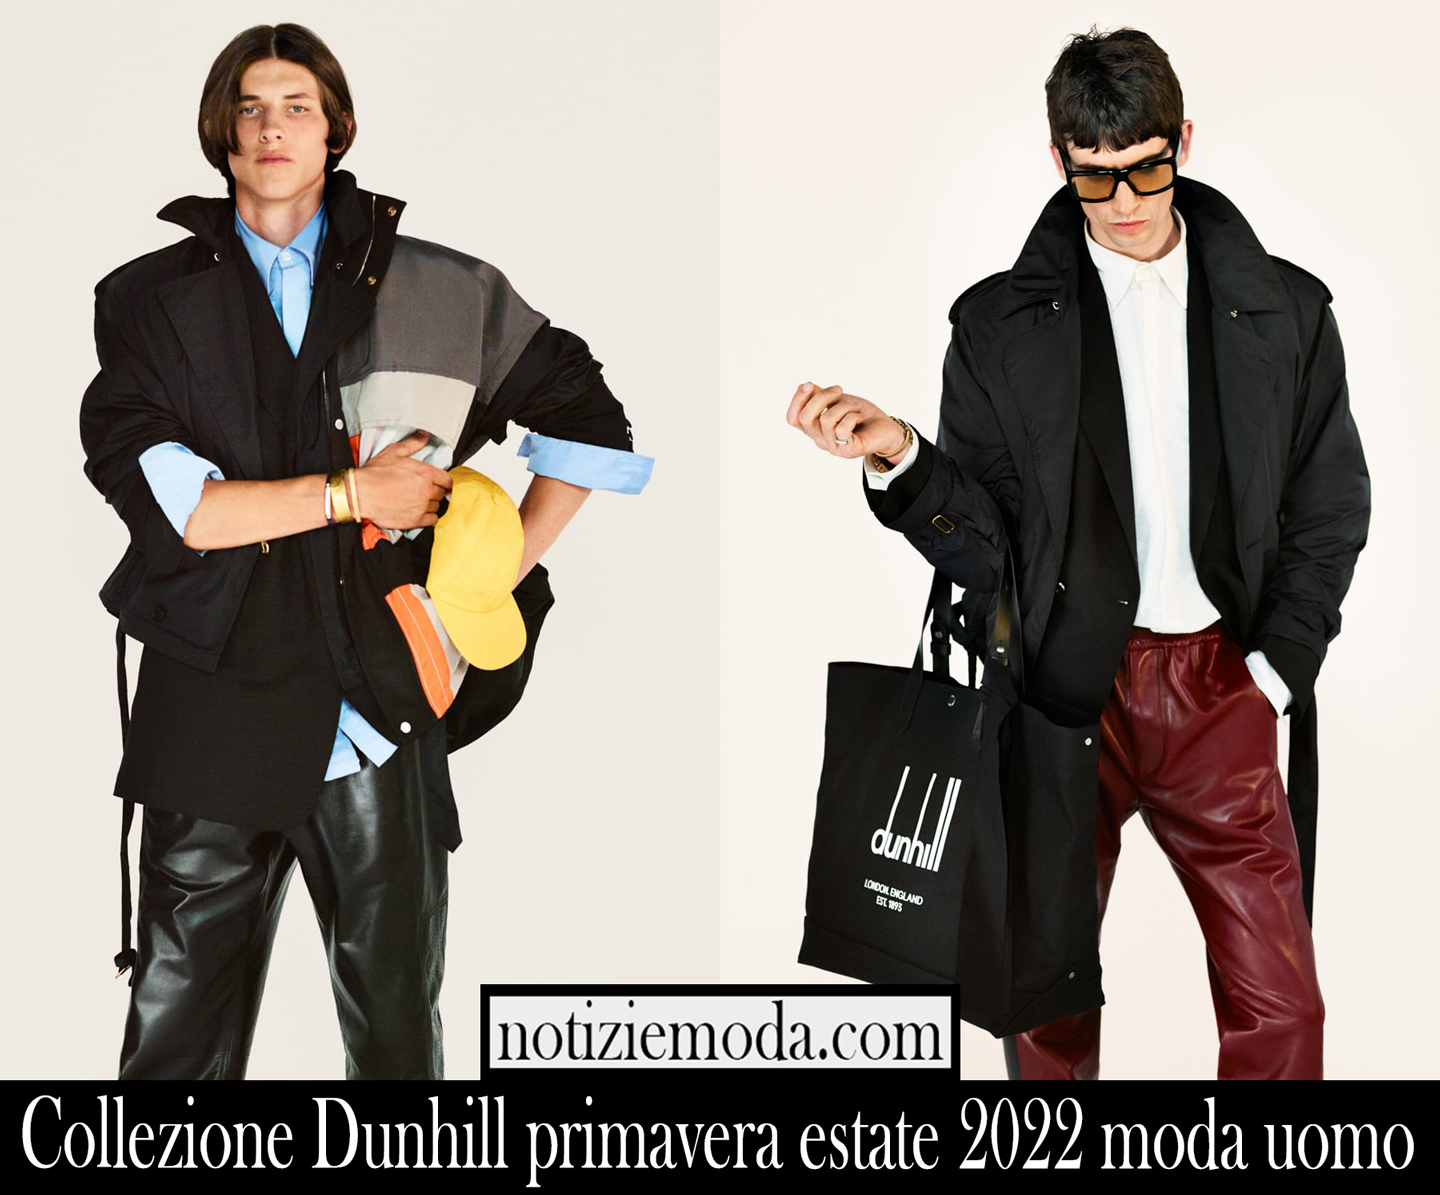 Collezione Dunhill primavera estate 2022 moda uomo